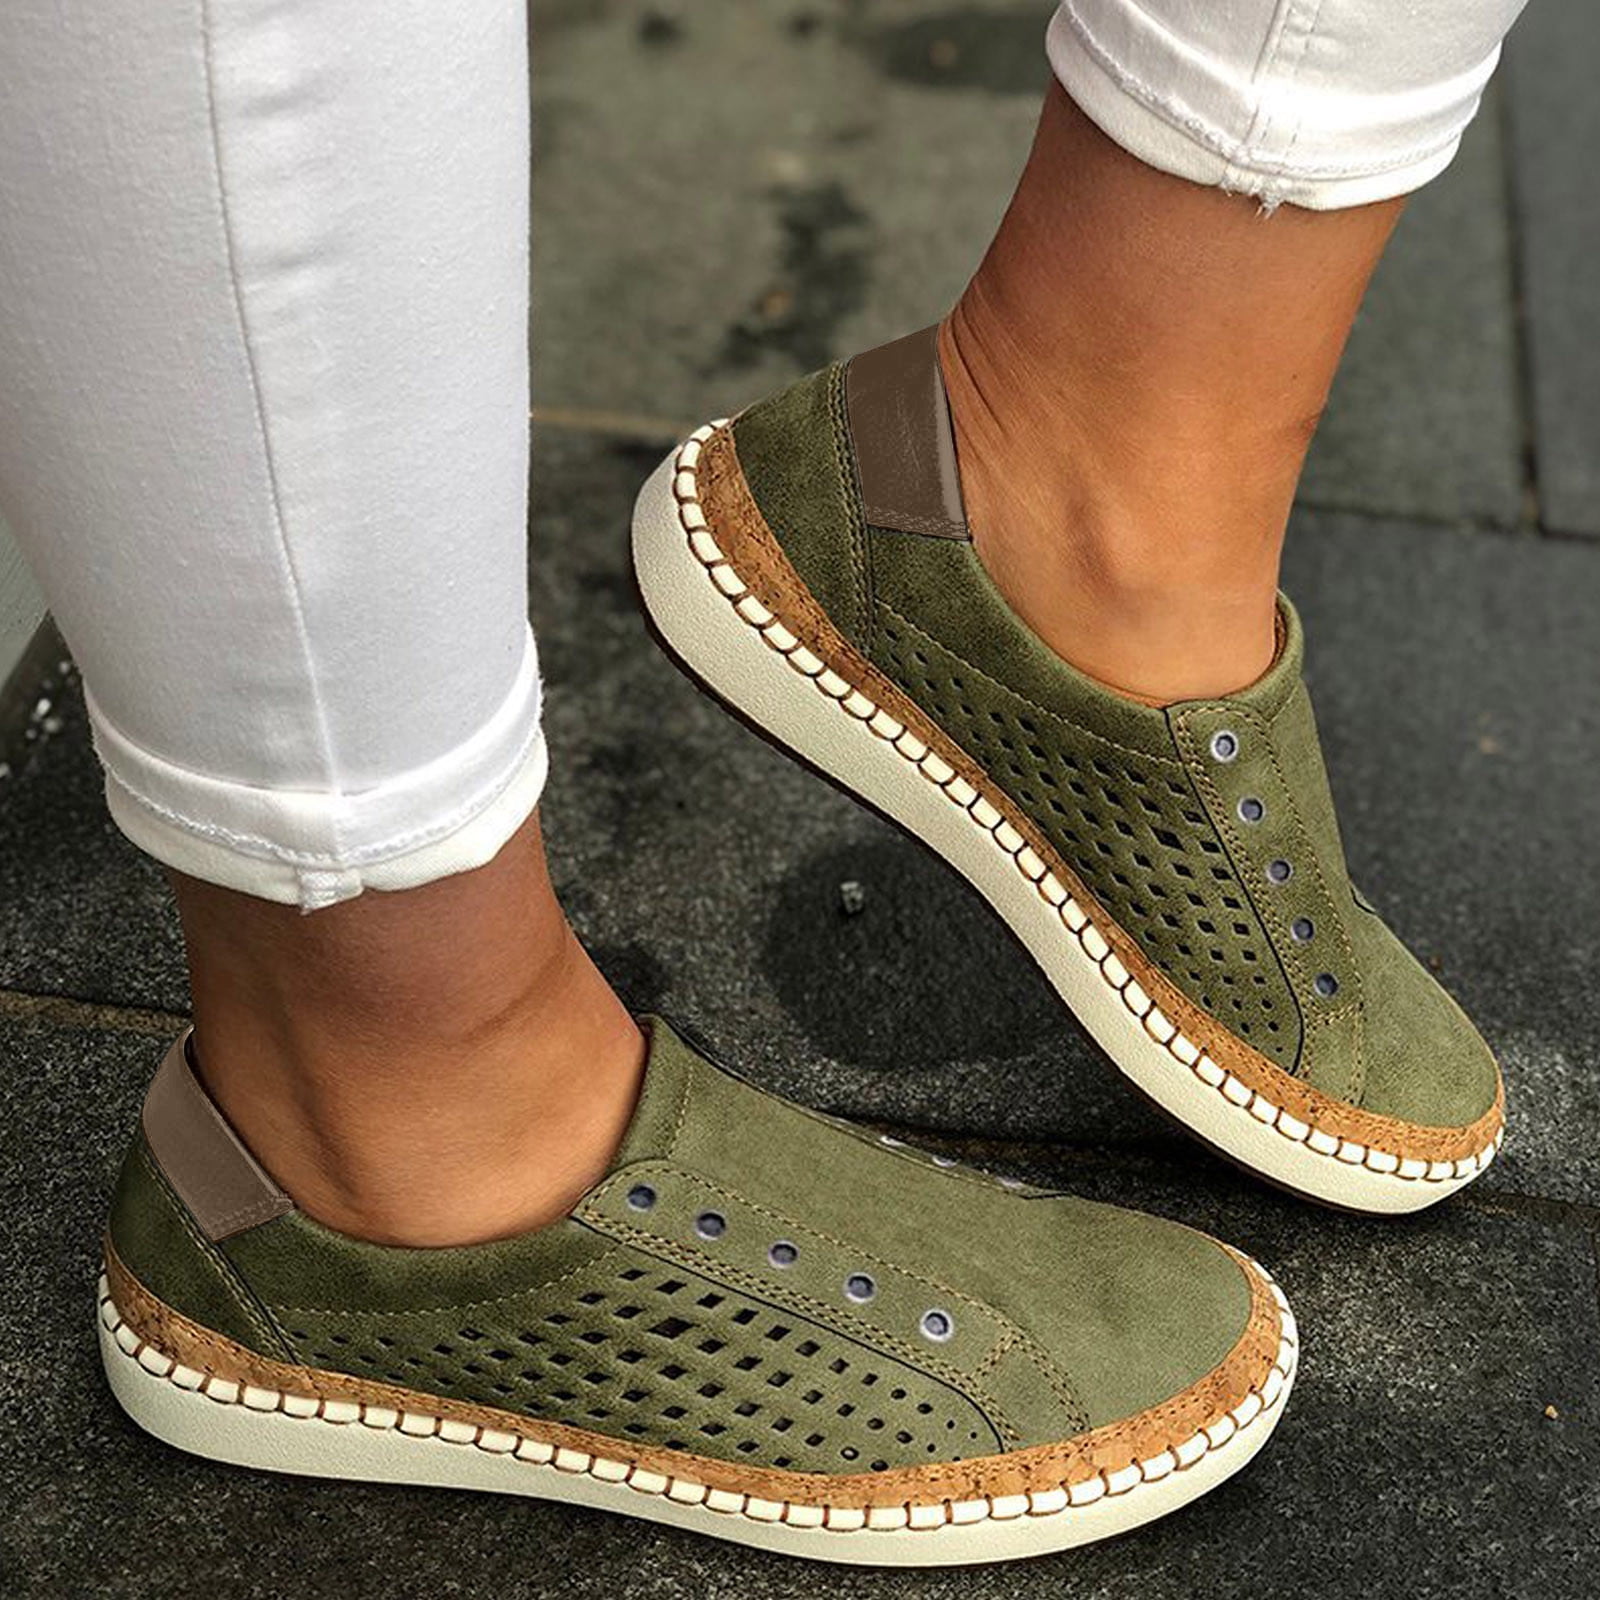 Herrnalise Women's Slip On Shoes Slip-On Comfort Fashion Comfortable For  Walking Sneakers Slip On Shoes Women Shoes Fashion 